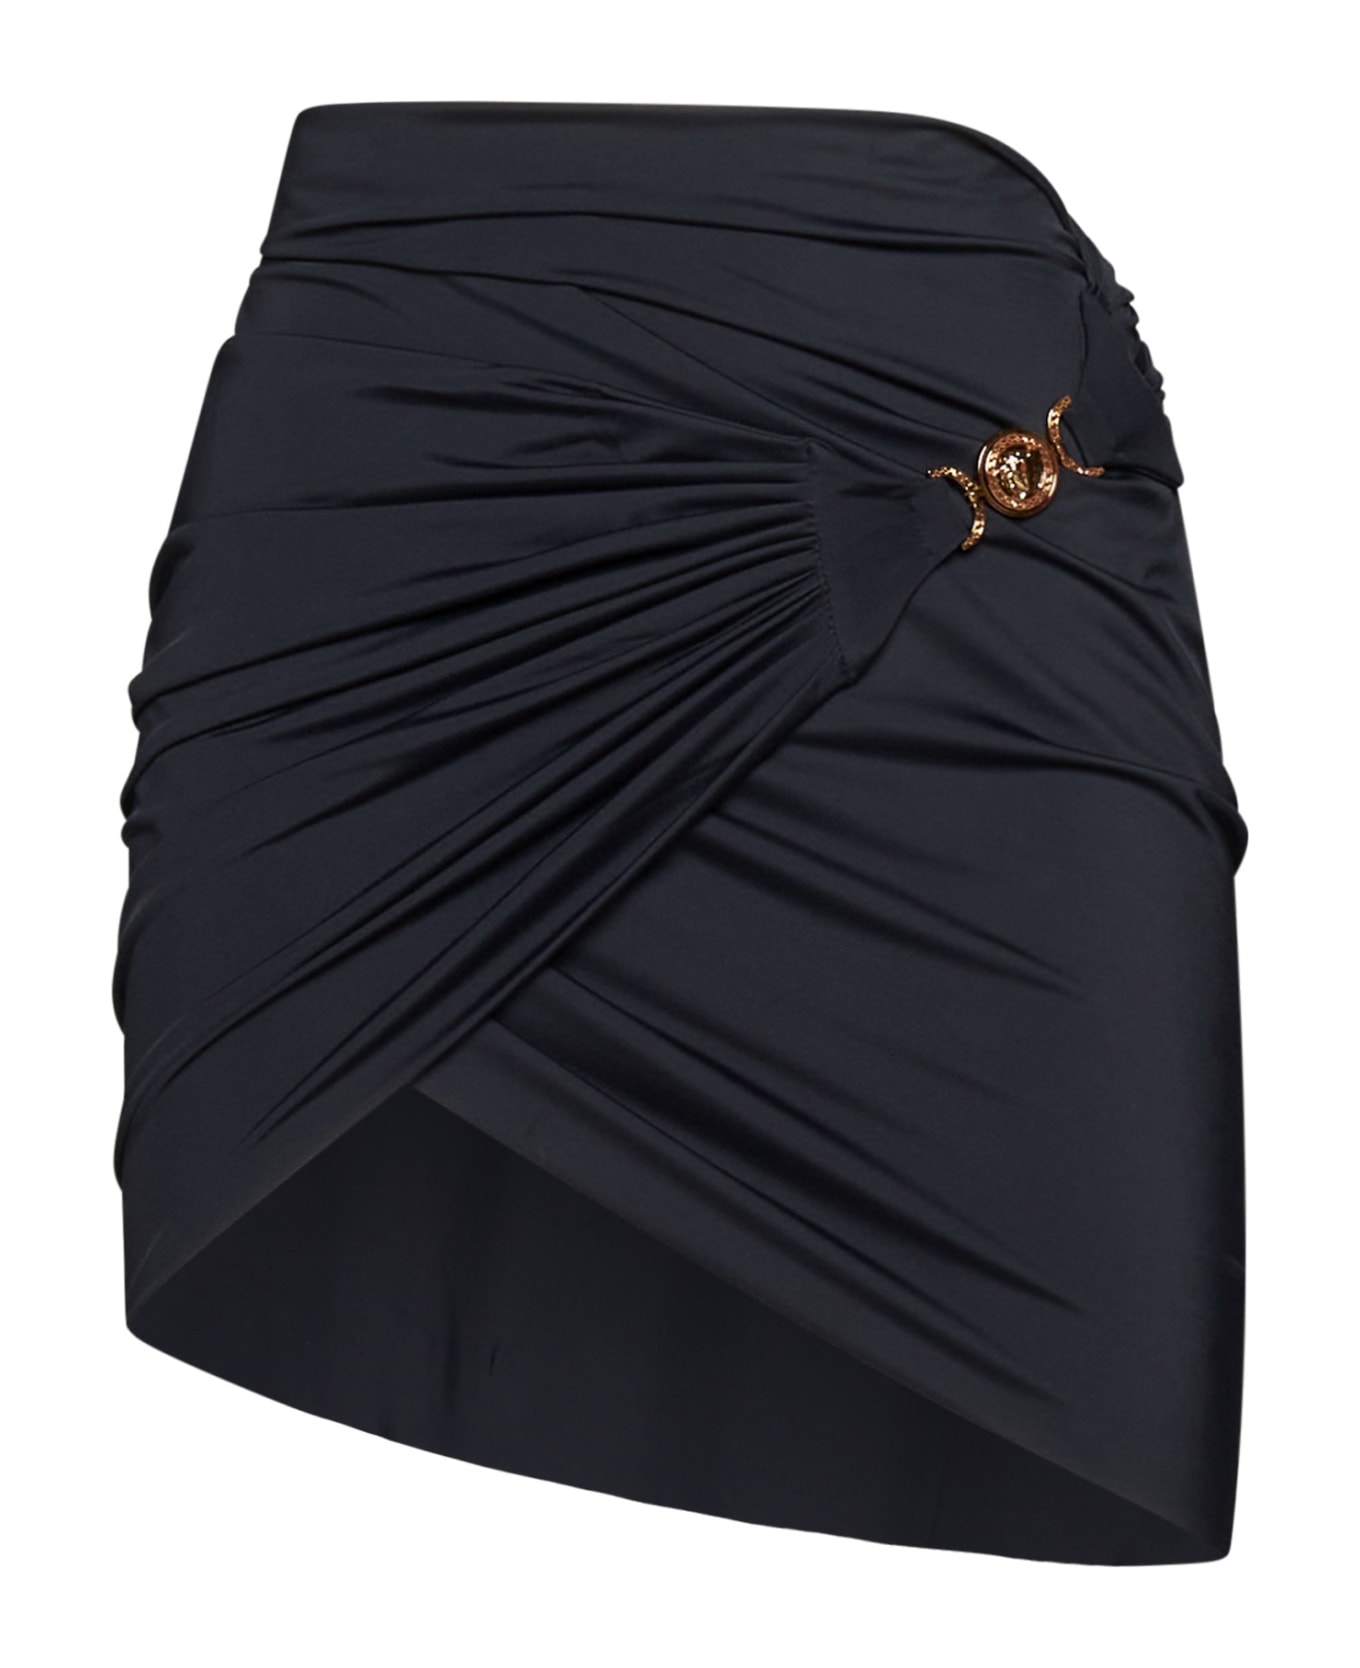 Versace 'medusa'costum Cover Skirt - Black